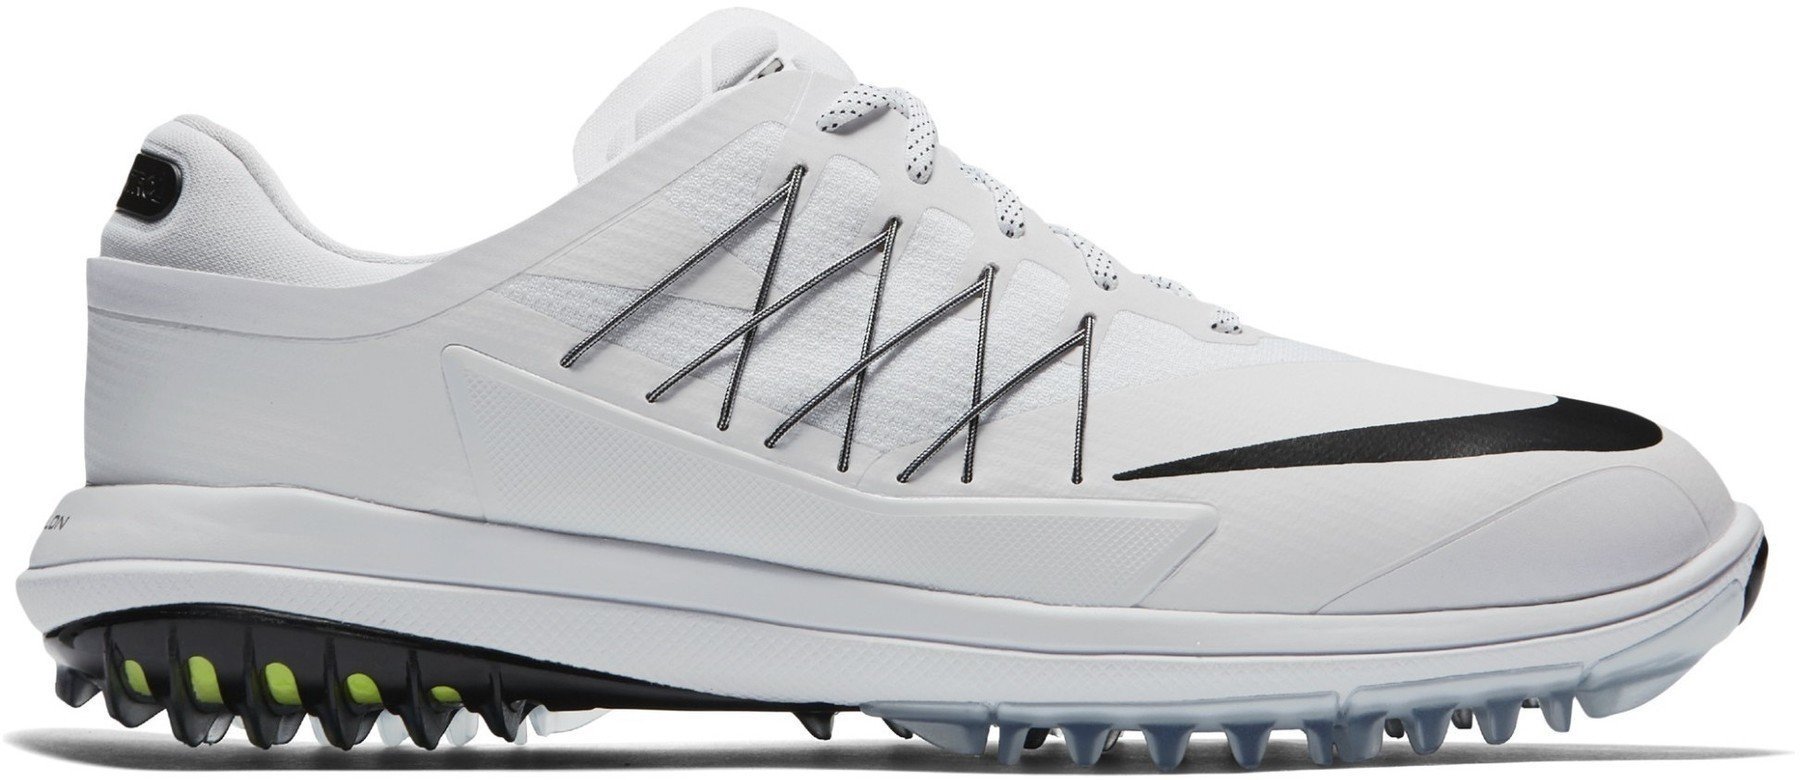 Chaussures de golf pour hommes Nike Lunar Control Vapor Chaussures de Golf pour Hommes White US 9